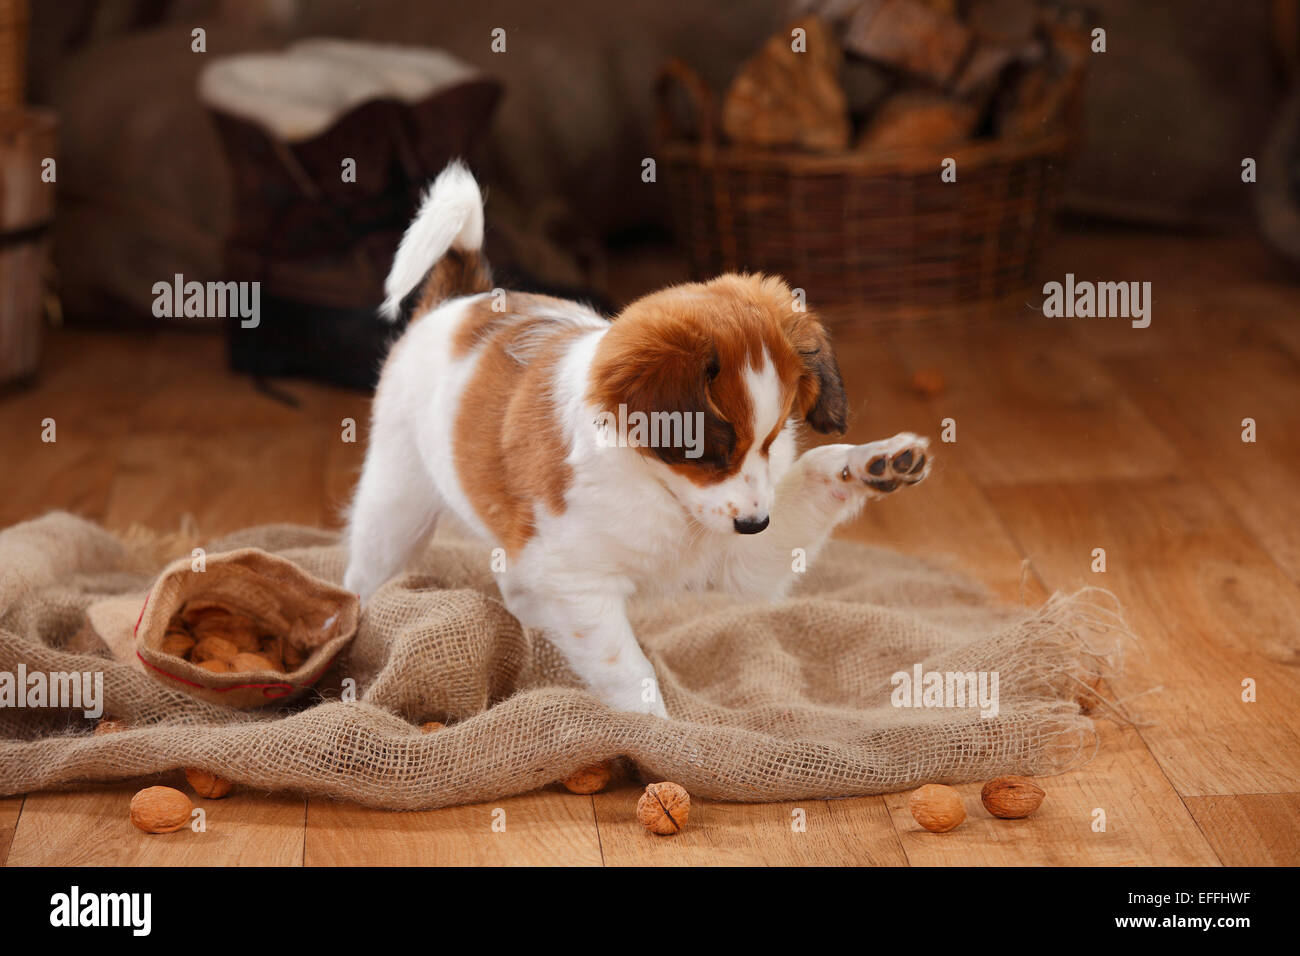 Kooikerhondje puppy playing with walnuts Stock Photo